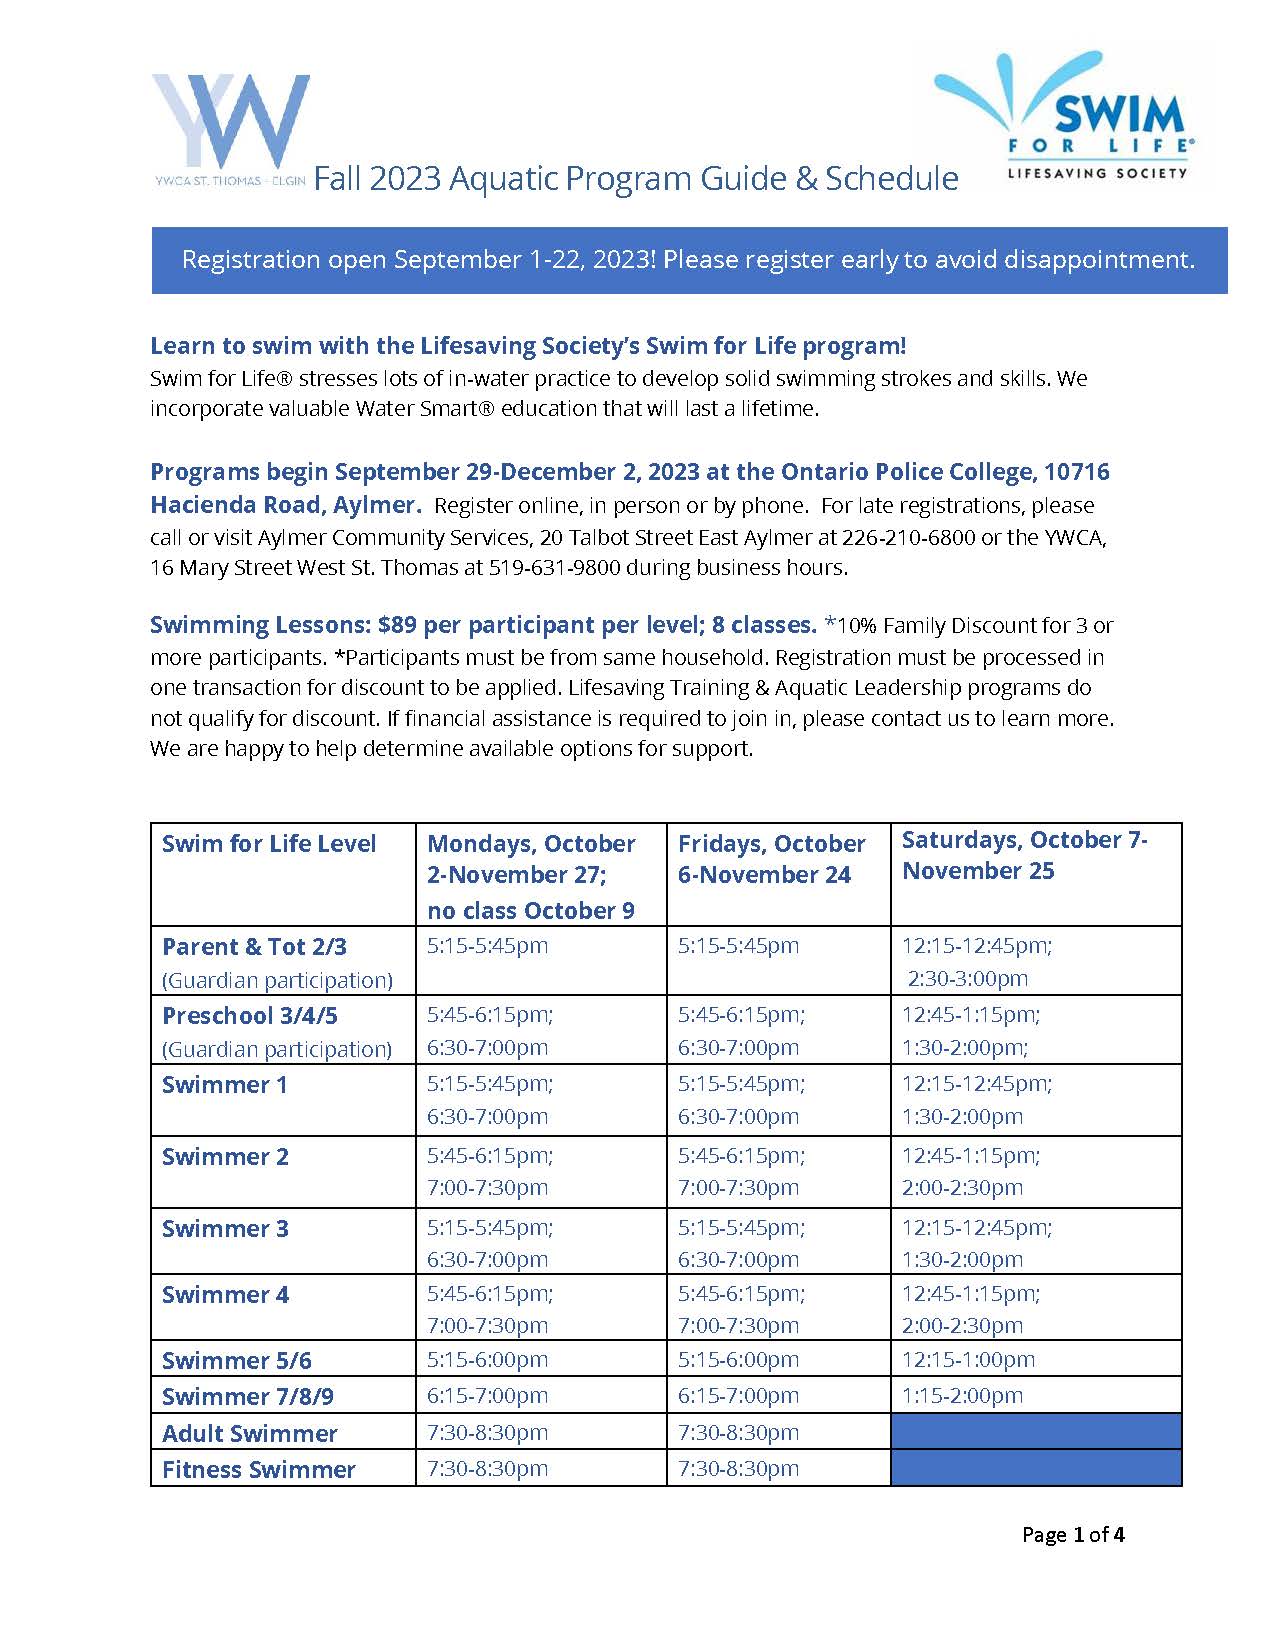 Fall 2023 Aquatics Program Schedule